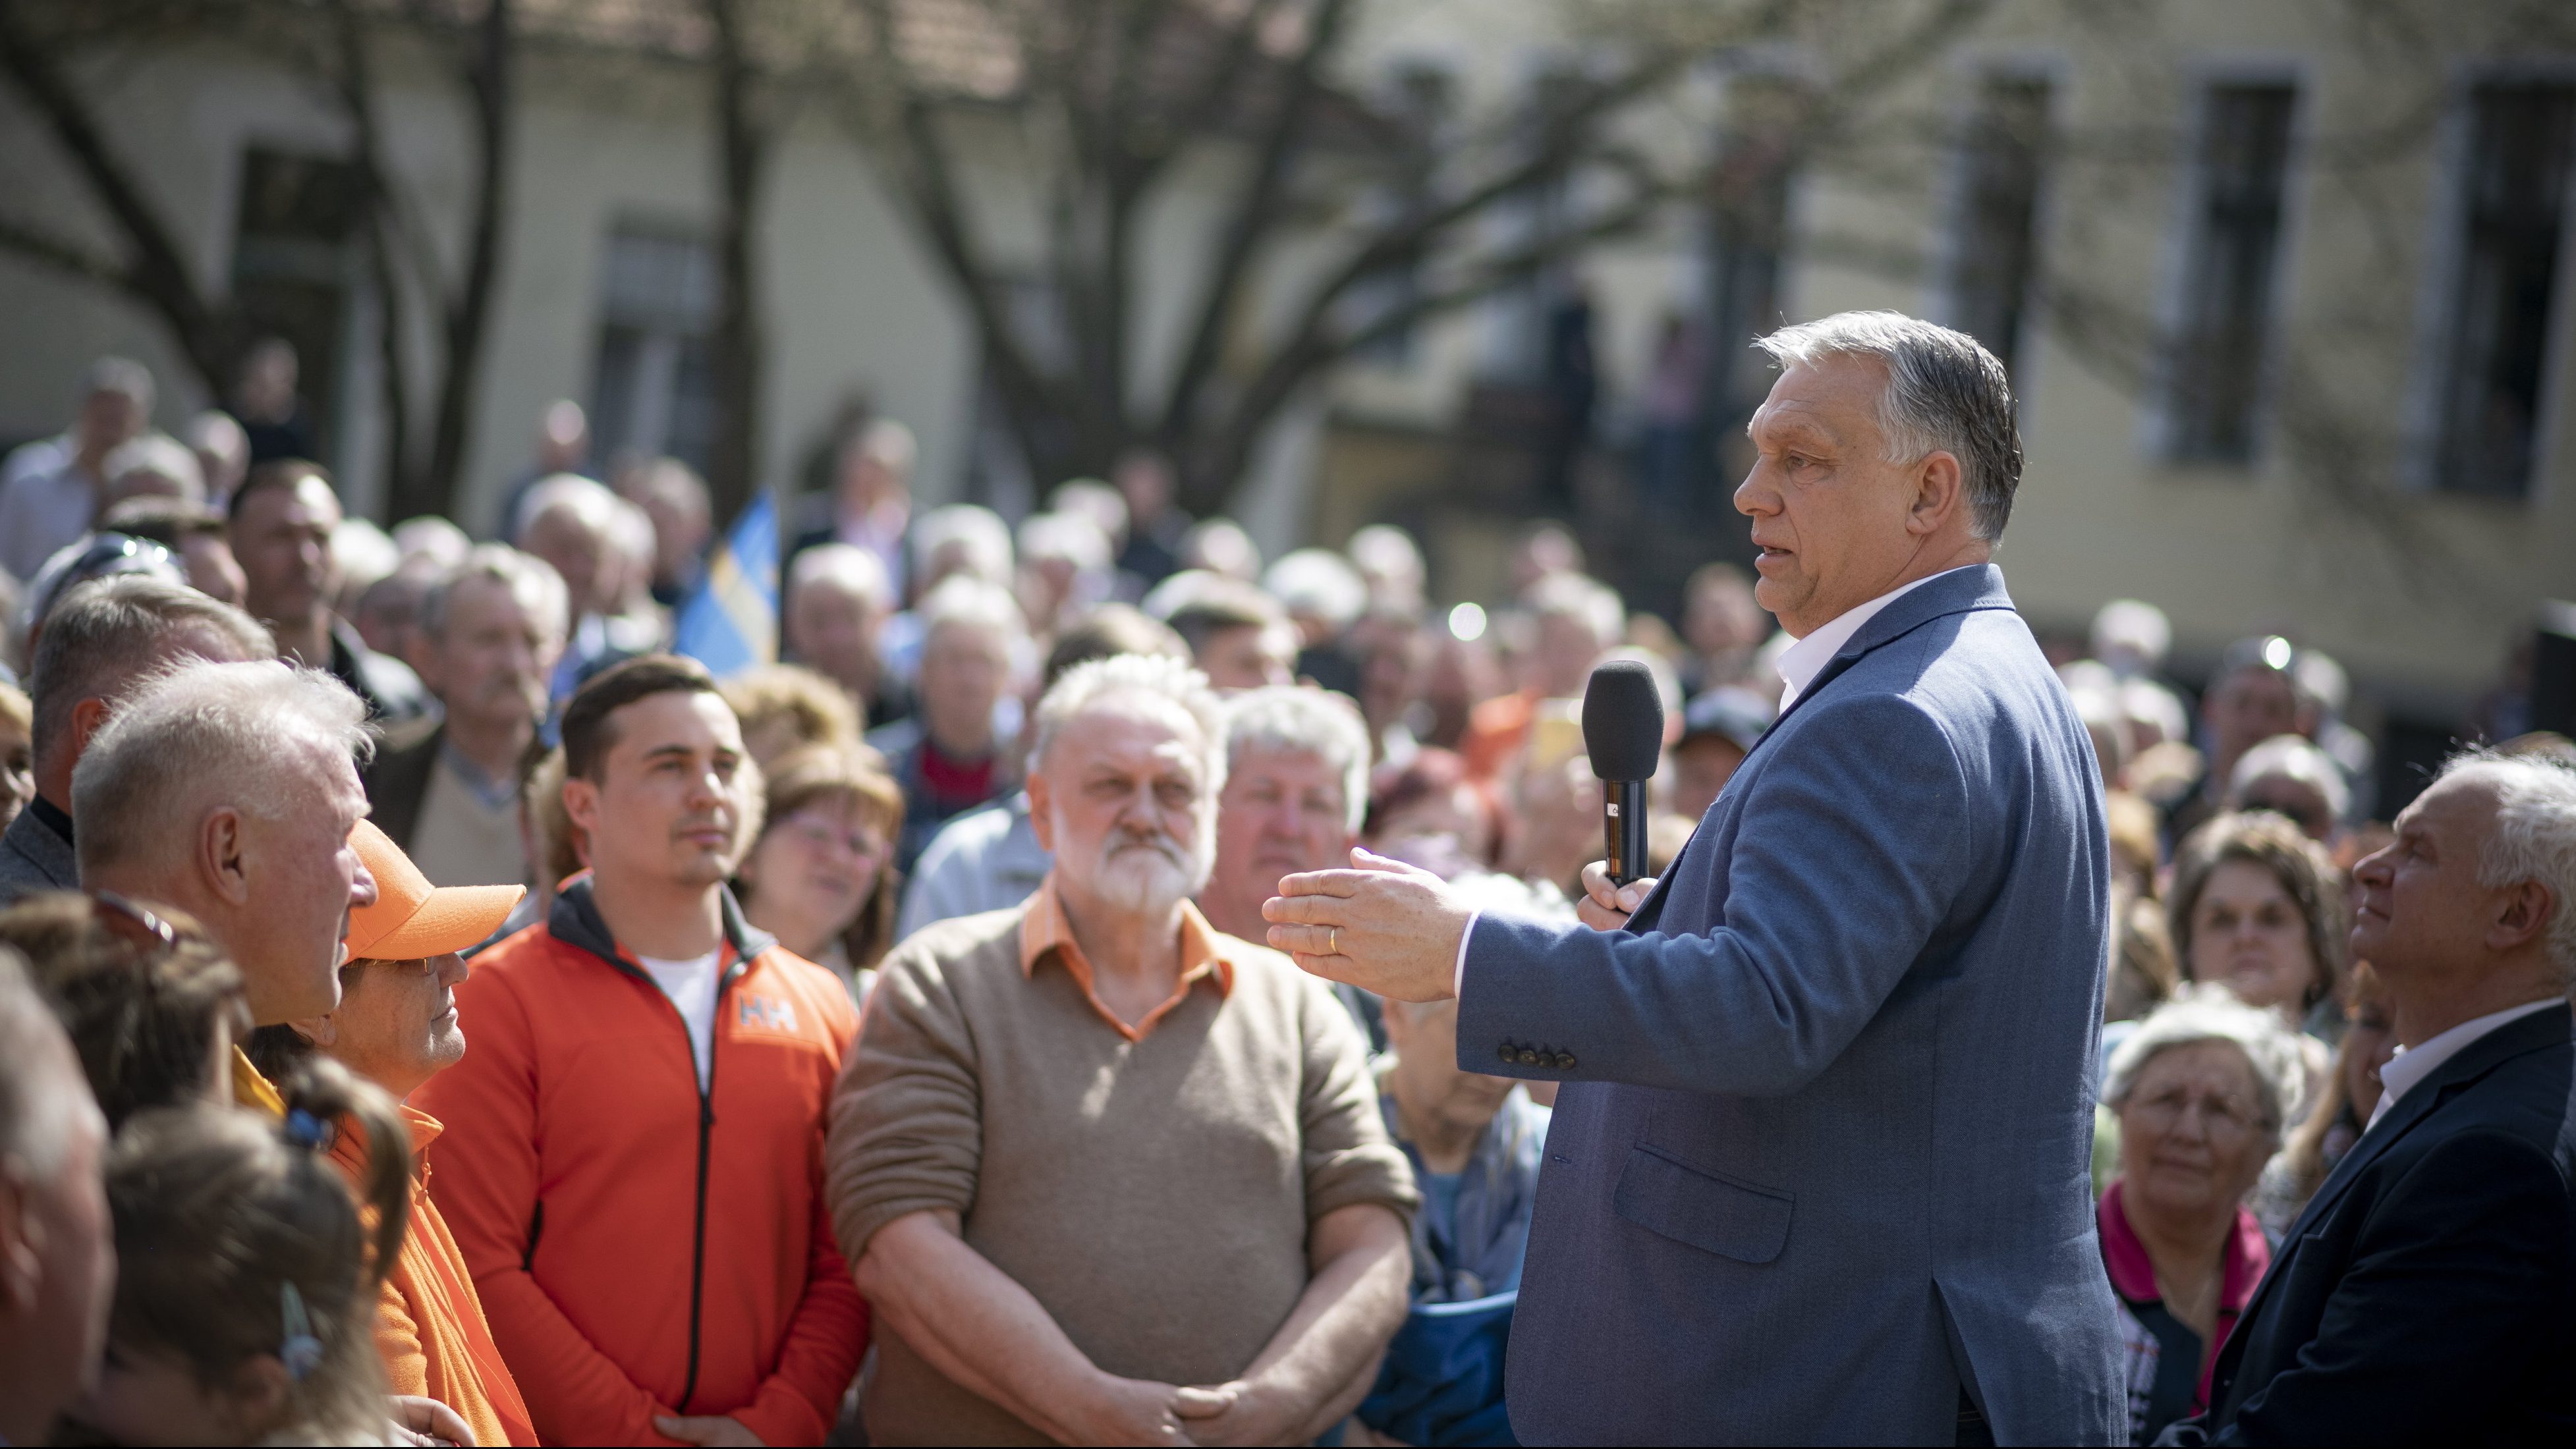 Kiderült, hol zárja a Fidesz kampányát Orbán Viktor